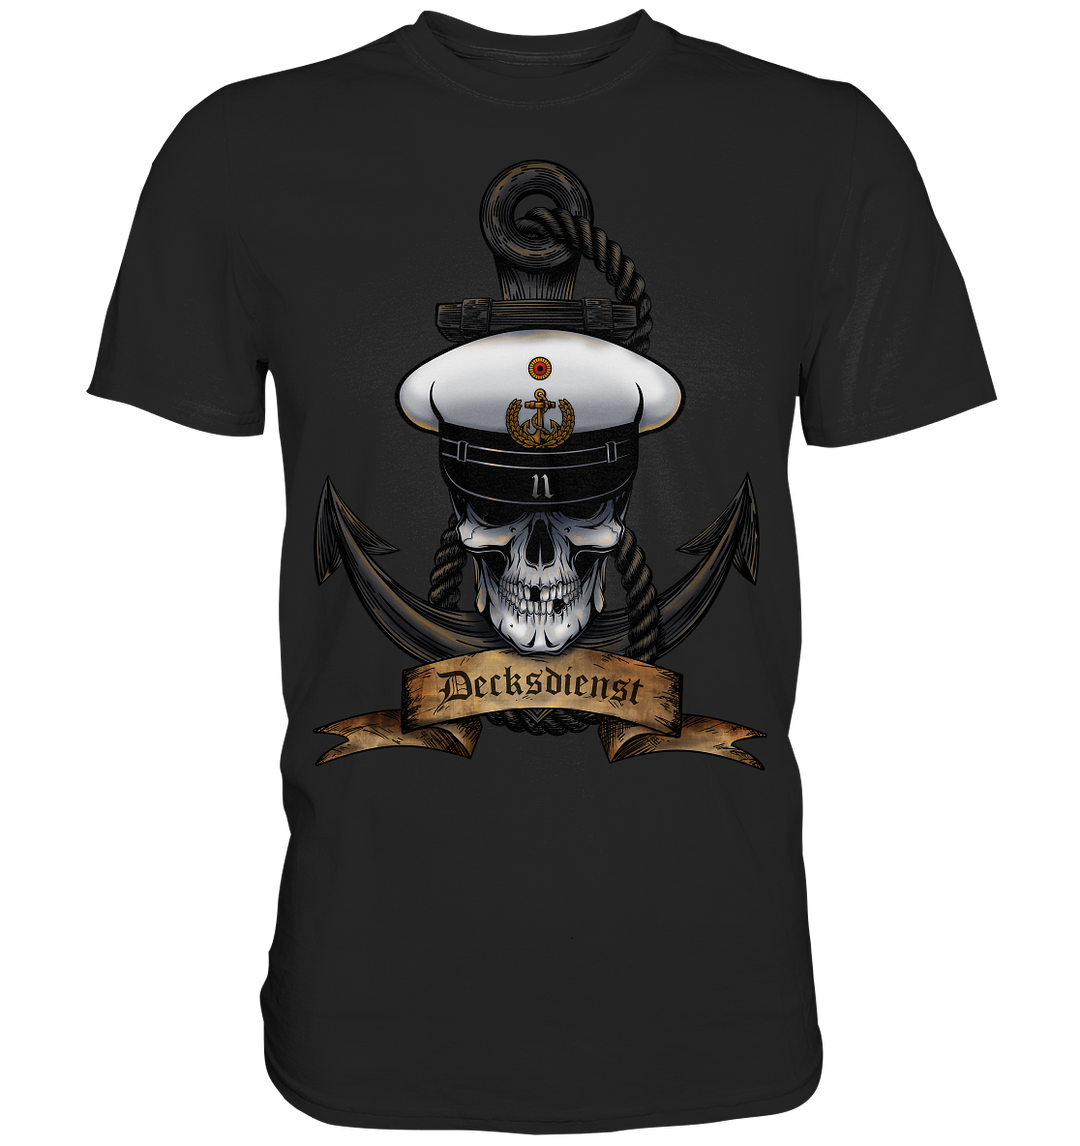 "Marine 11 - Decksdienst"  - Premium Shirt